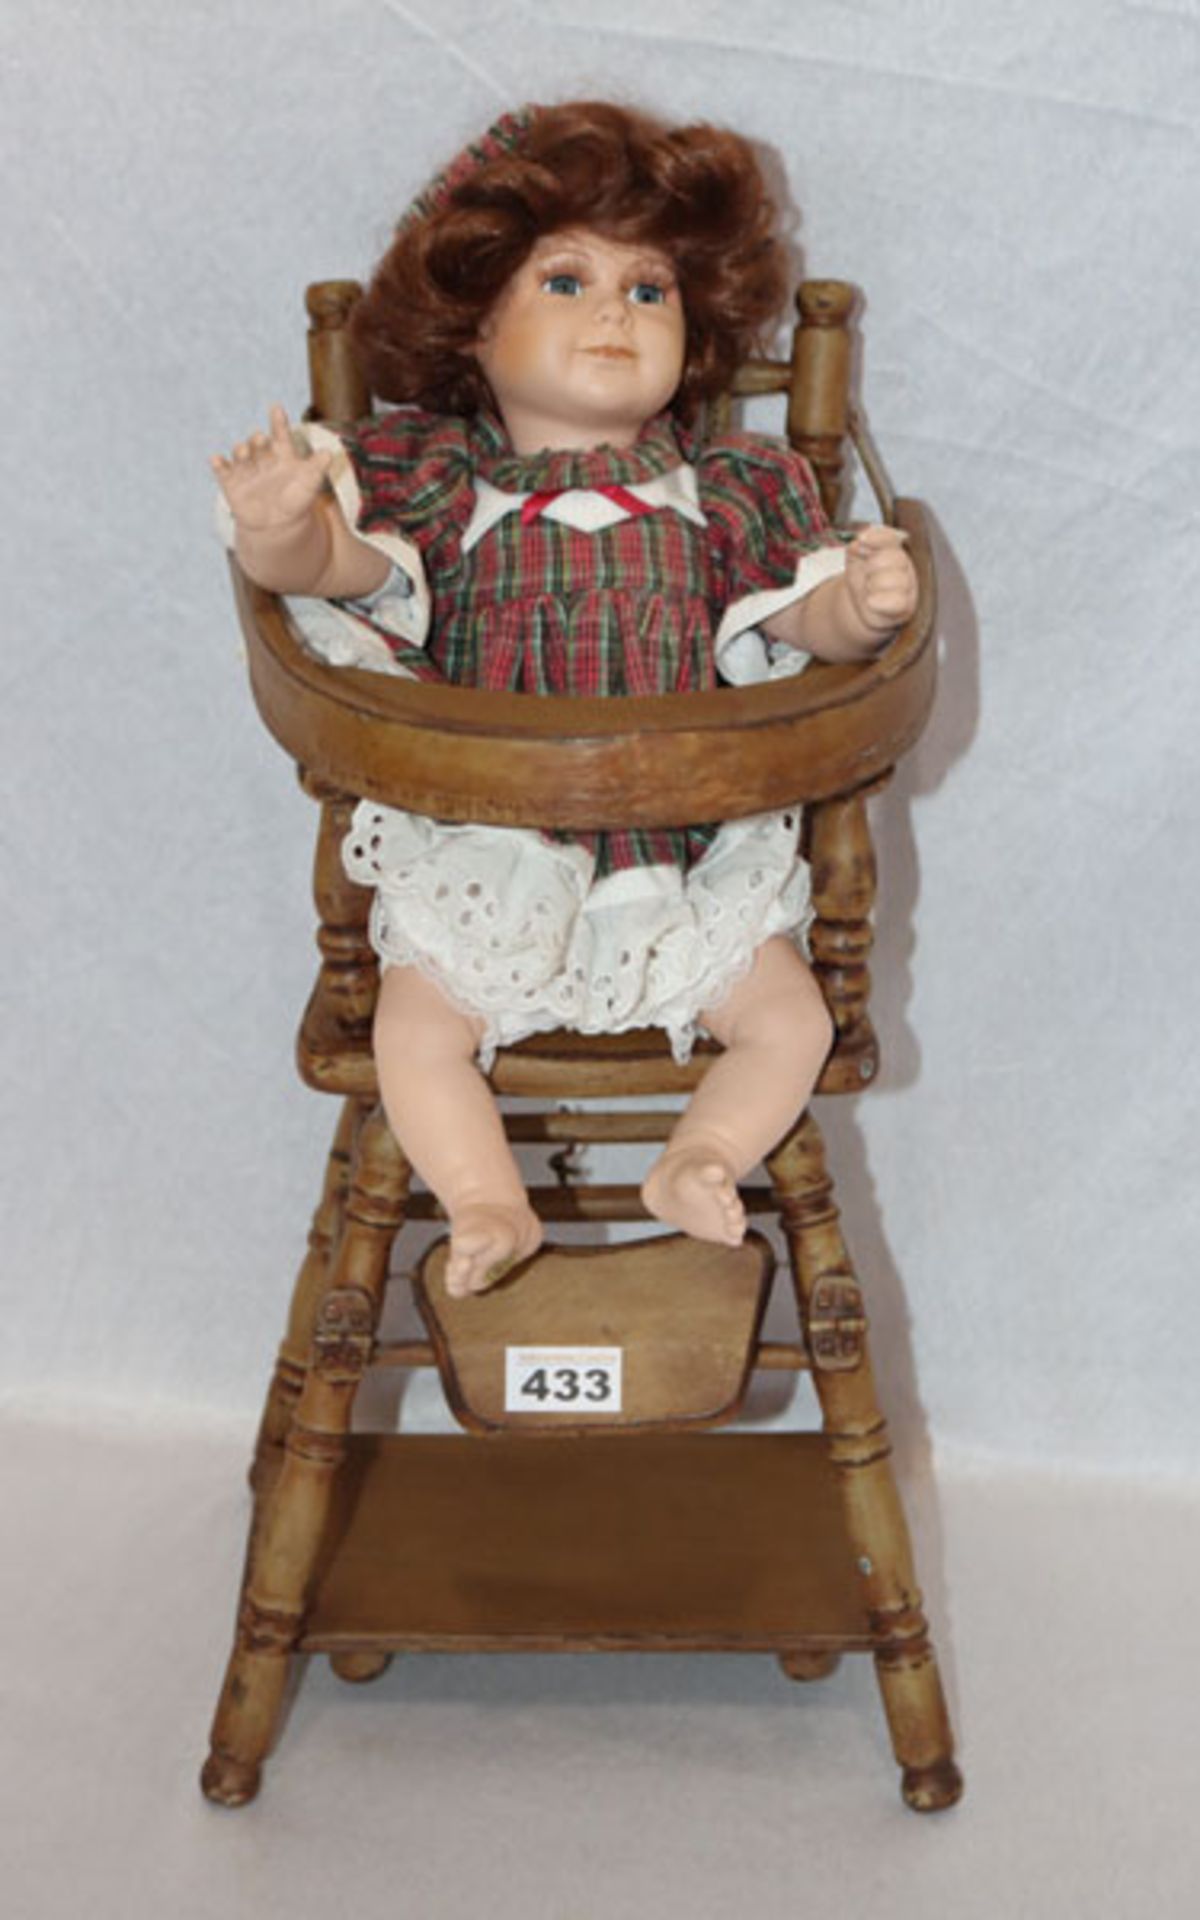 Puppen-Hochstuhl mit Puppe, schön bekleidet, neuwertig, H 56 cm, B 25 cm, T 31 cm